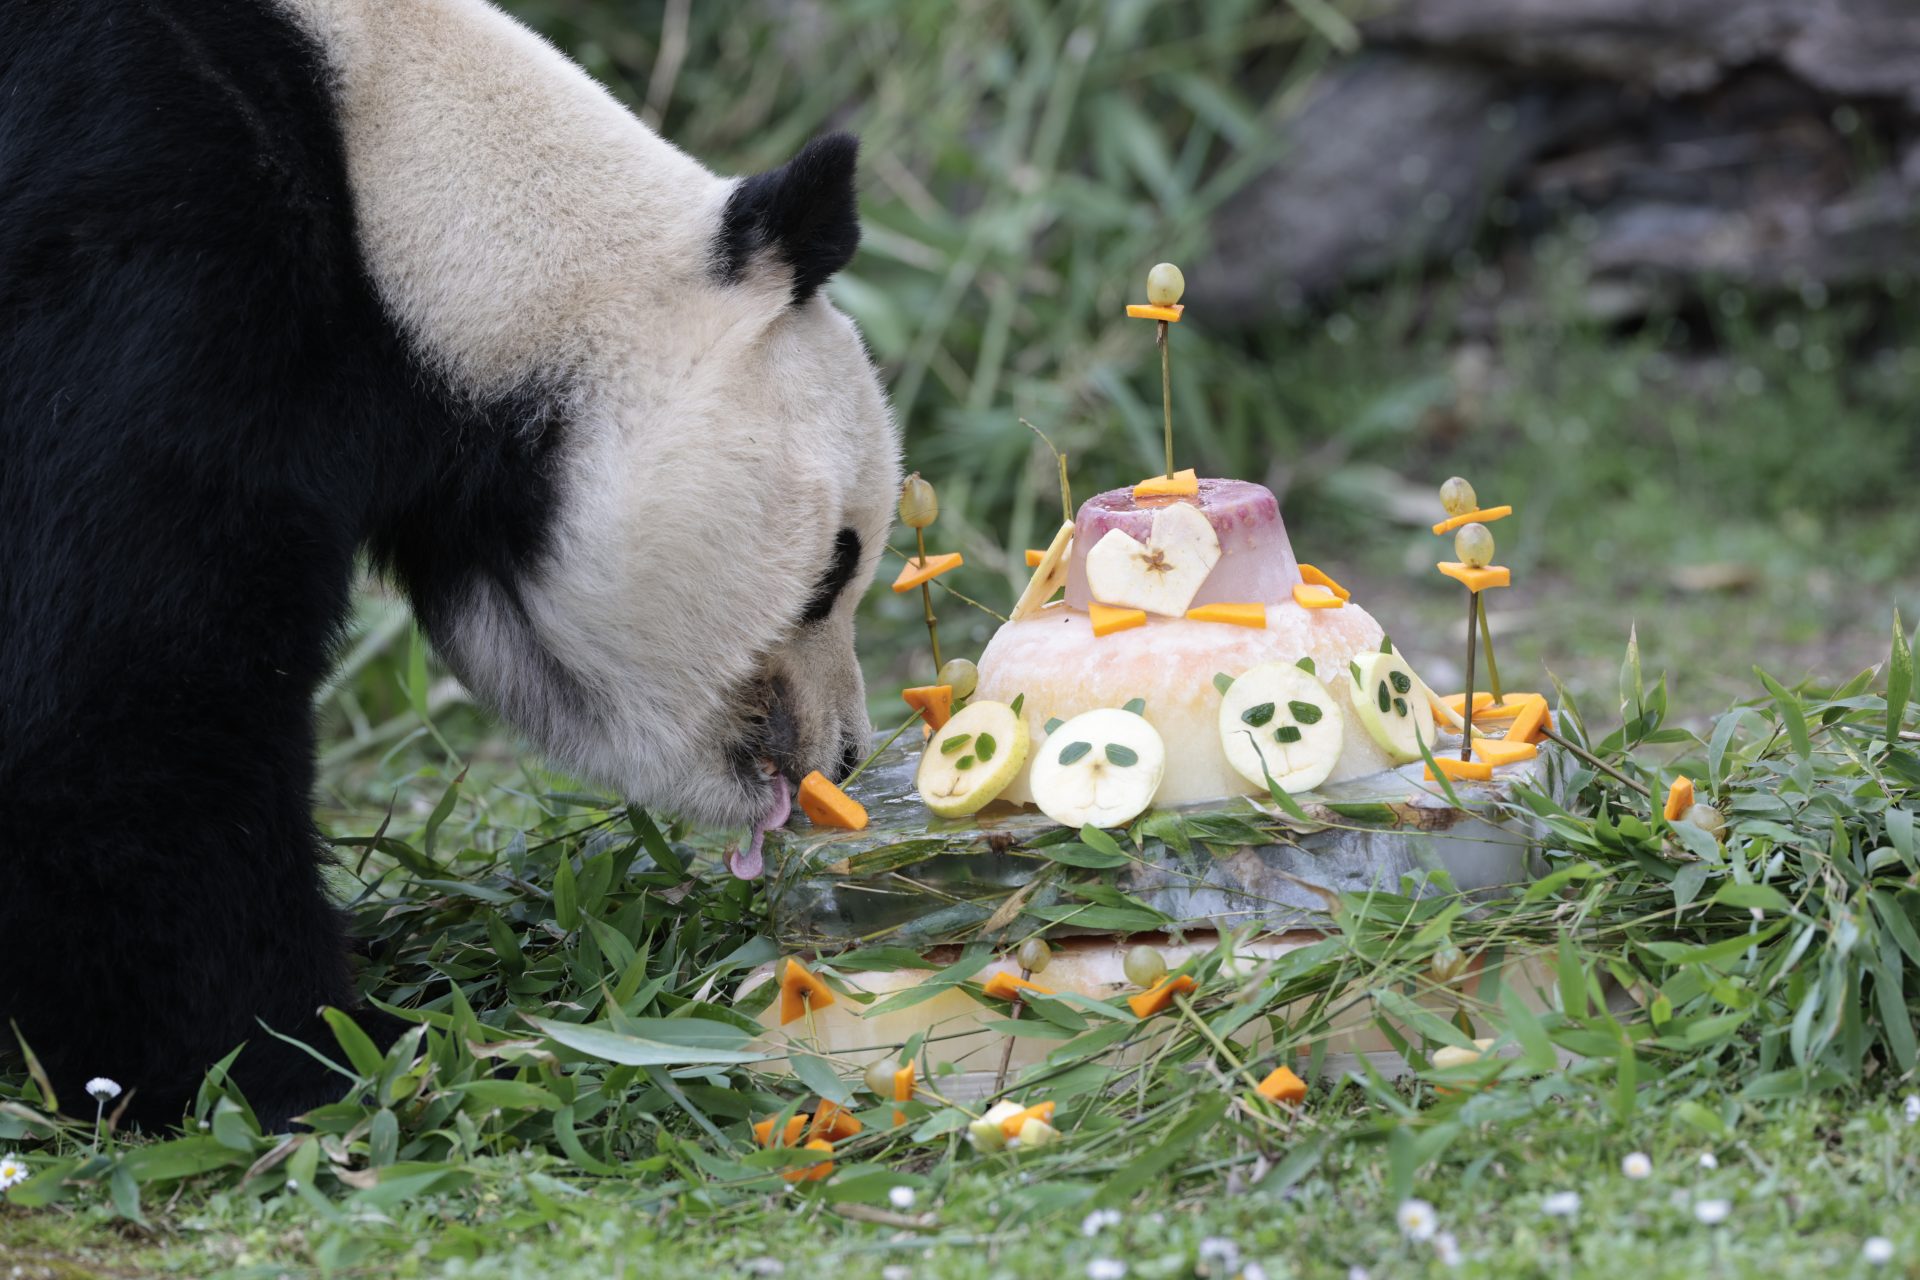 Bing Xing, uno de los cinco ejemplares de oso panda gigante que viven en el zoológico de Madrid, el único lugar de España que acoge a pandas gigantes, come una tarta. EFE/ ZIPI